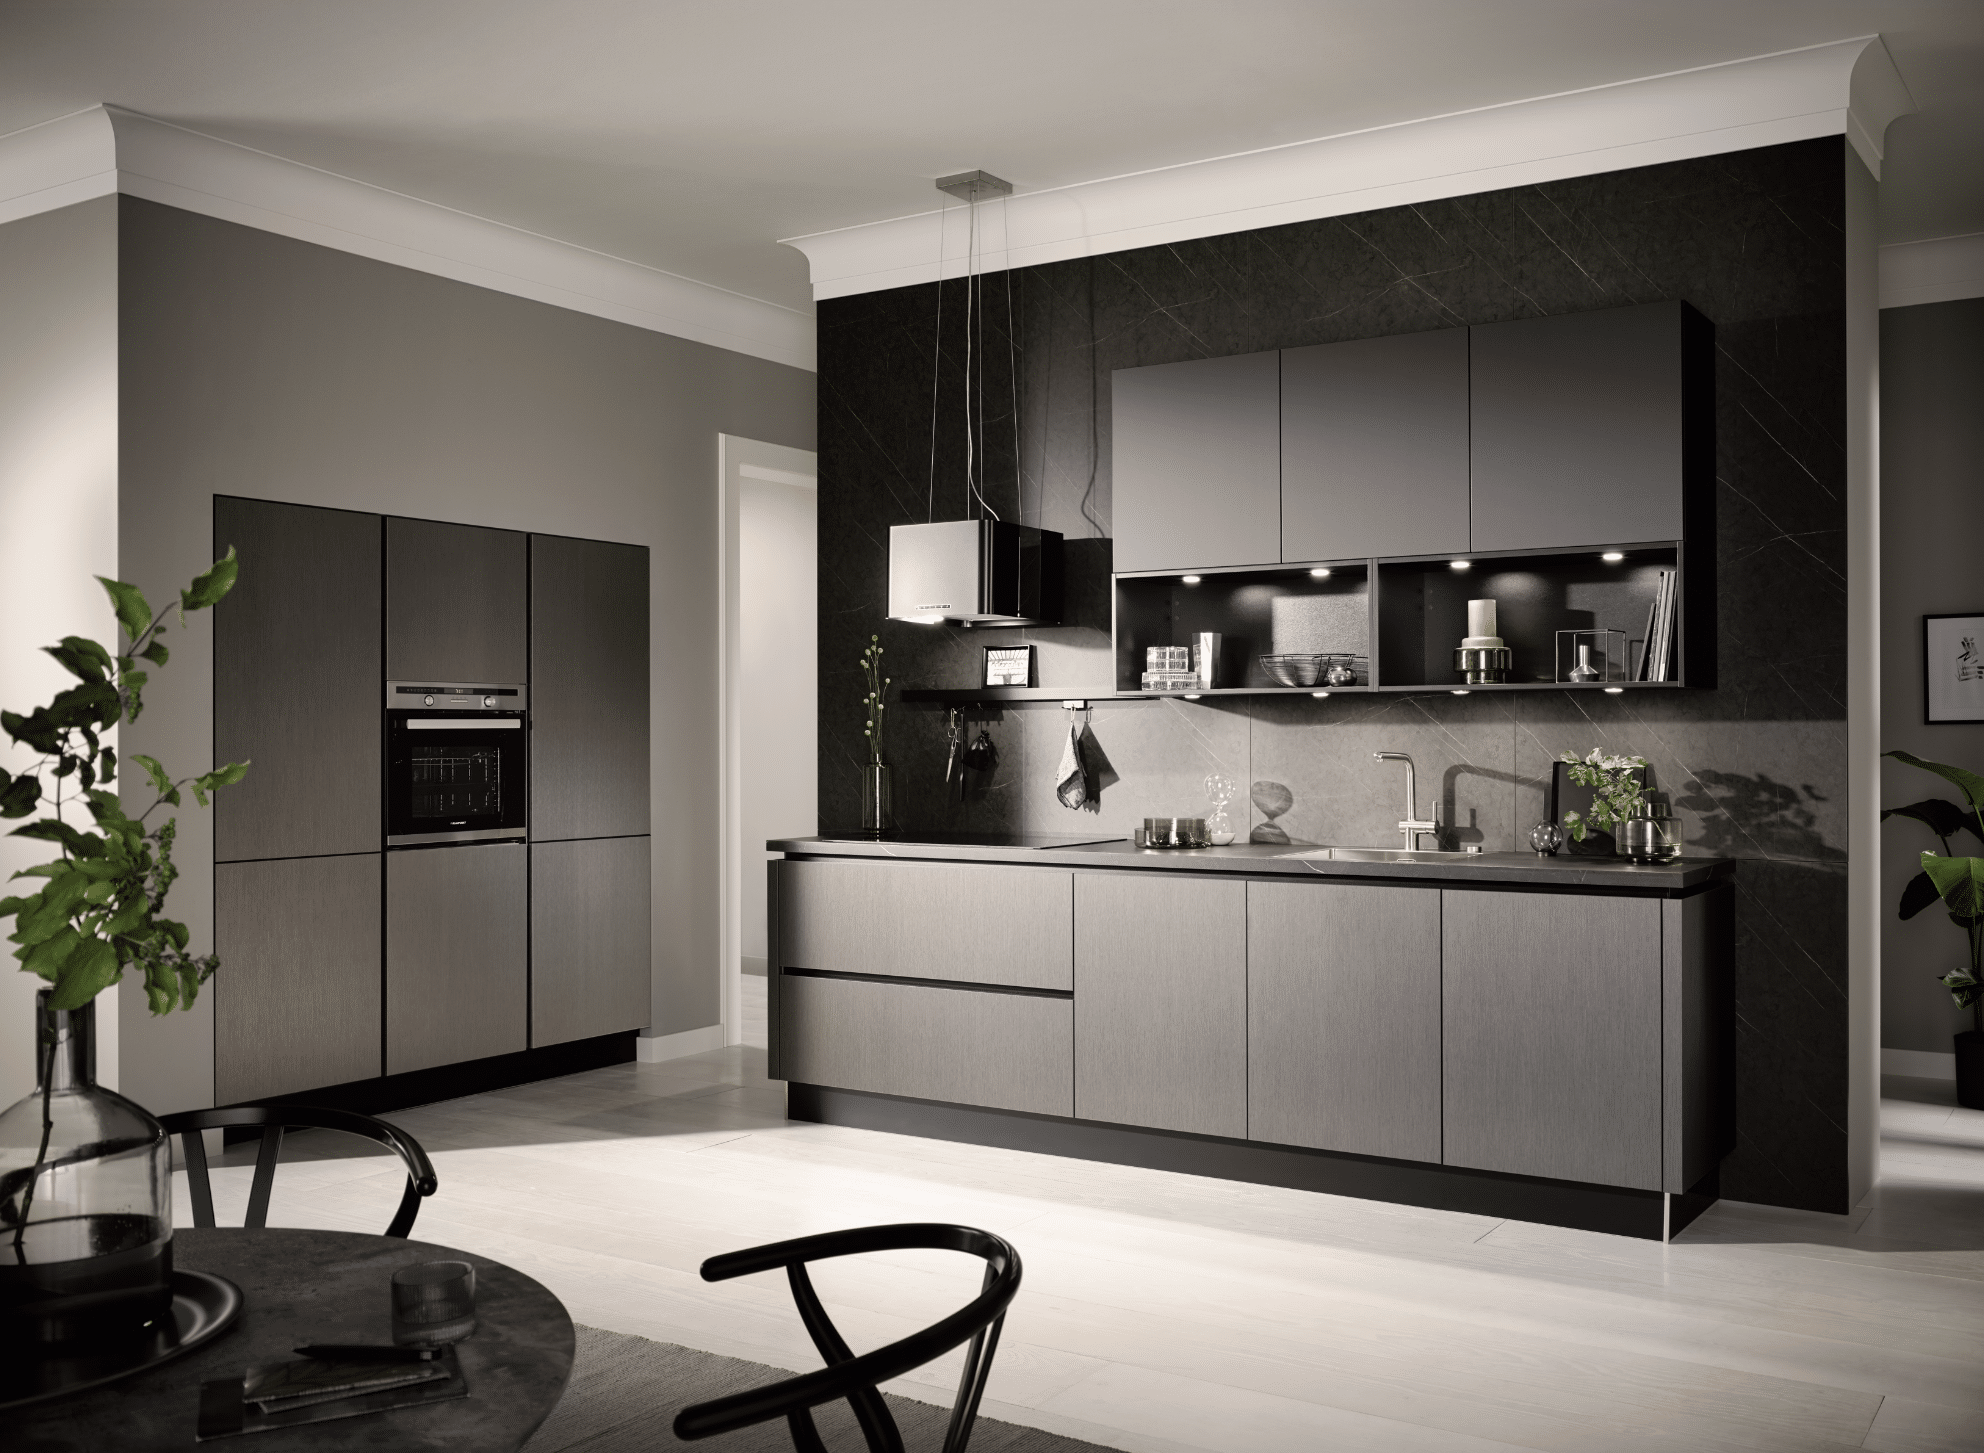 WOHNHAUS Grill und Ronacher zeigt eine dunkelgraue moderne Häcker Küche mit Wandschränken und ansprechender Dekoration.